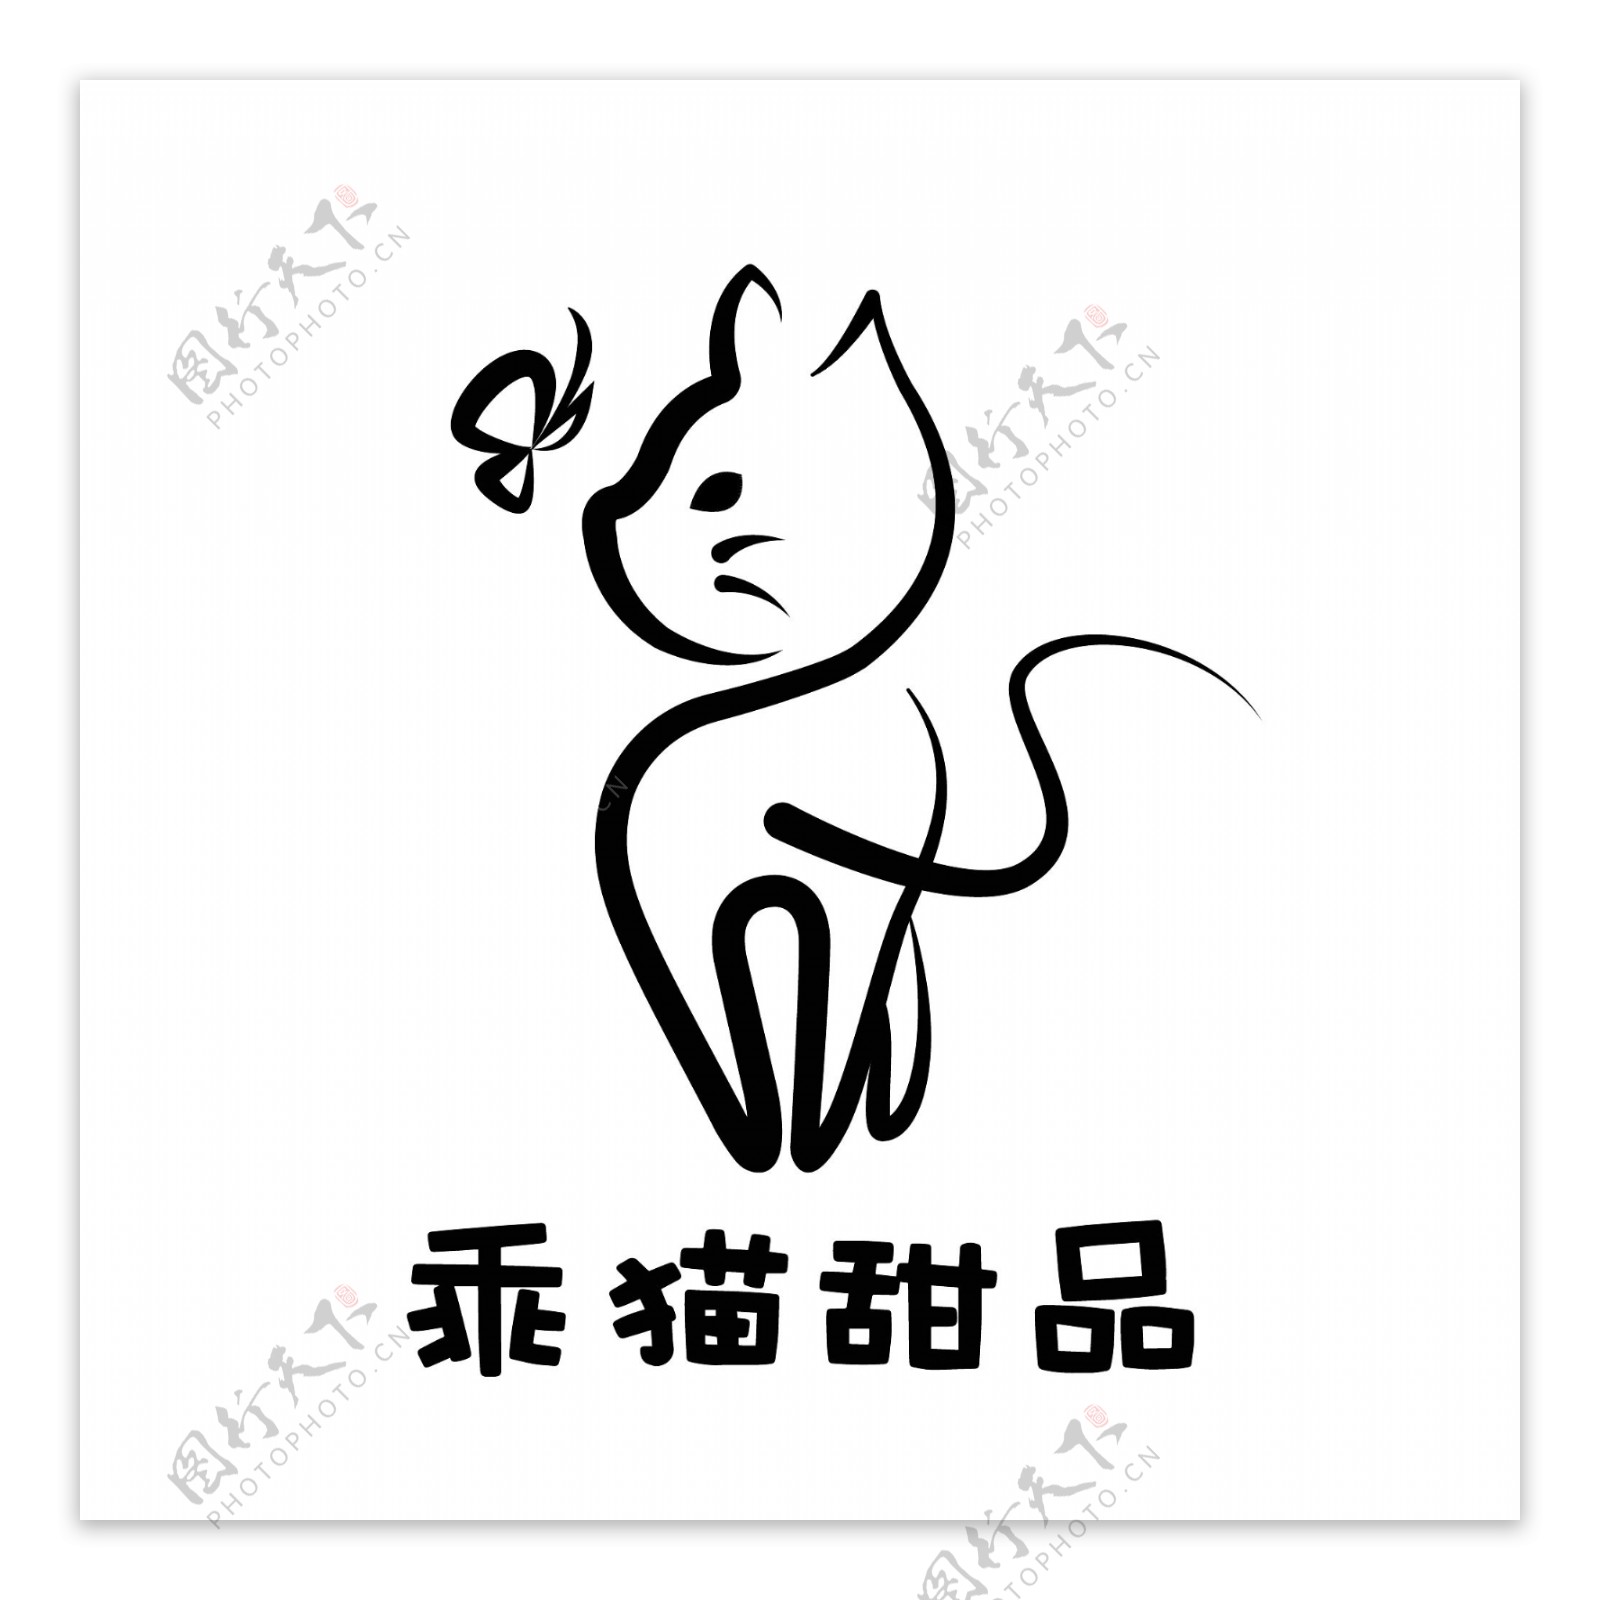 乖猫咖啡logo